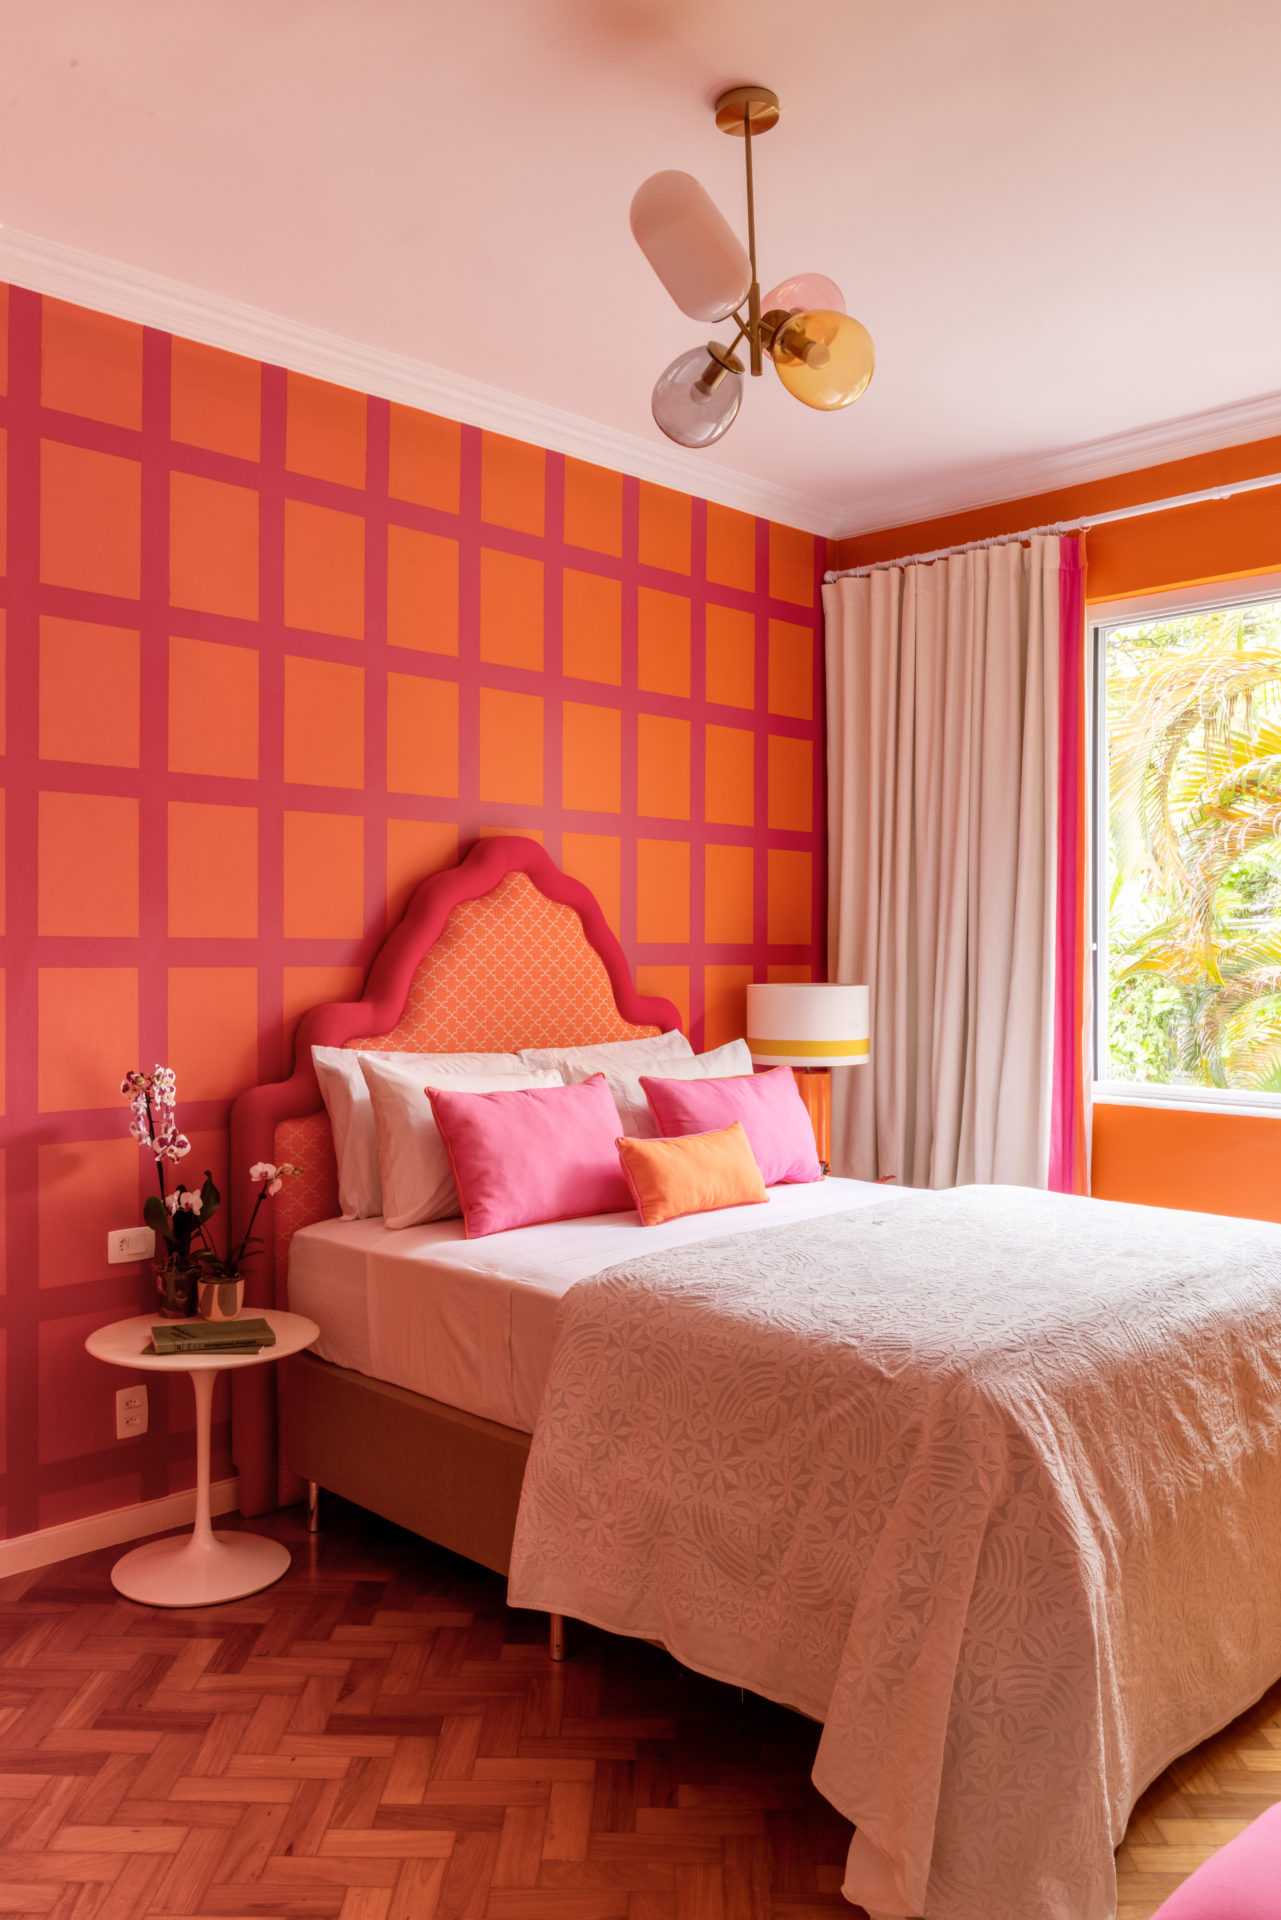 Apartamento Almodovariano - Sem bege, cinza e branco. Quarto com as paredes pintadas de laranja e rosa formando quadrados